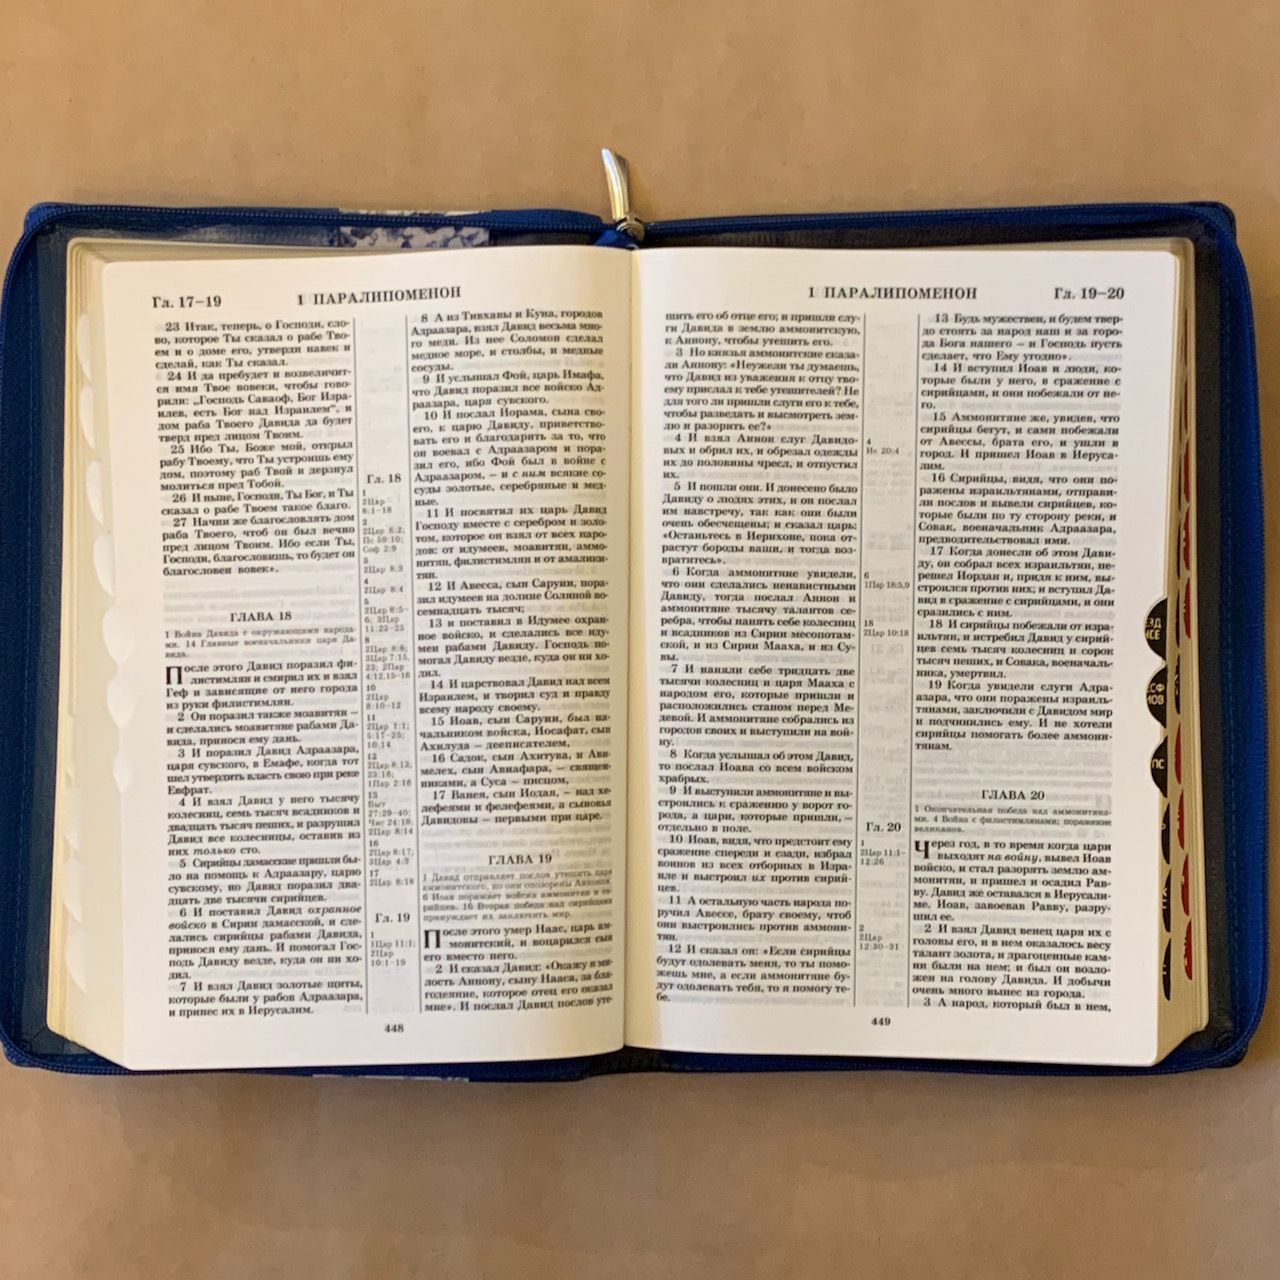 Библия 077DTzti формат, переплет из искусственной кожи на молнии с индексами, надпись золотом "Библия", цвет темно-синий/ синий с тканевой вставкой из цветов, большой формат, 180*260 мм, цветные карты, крупный шрифт